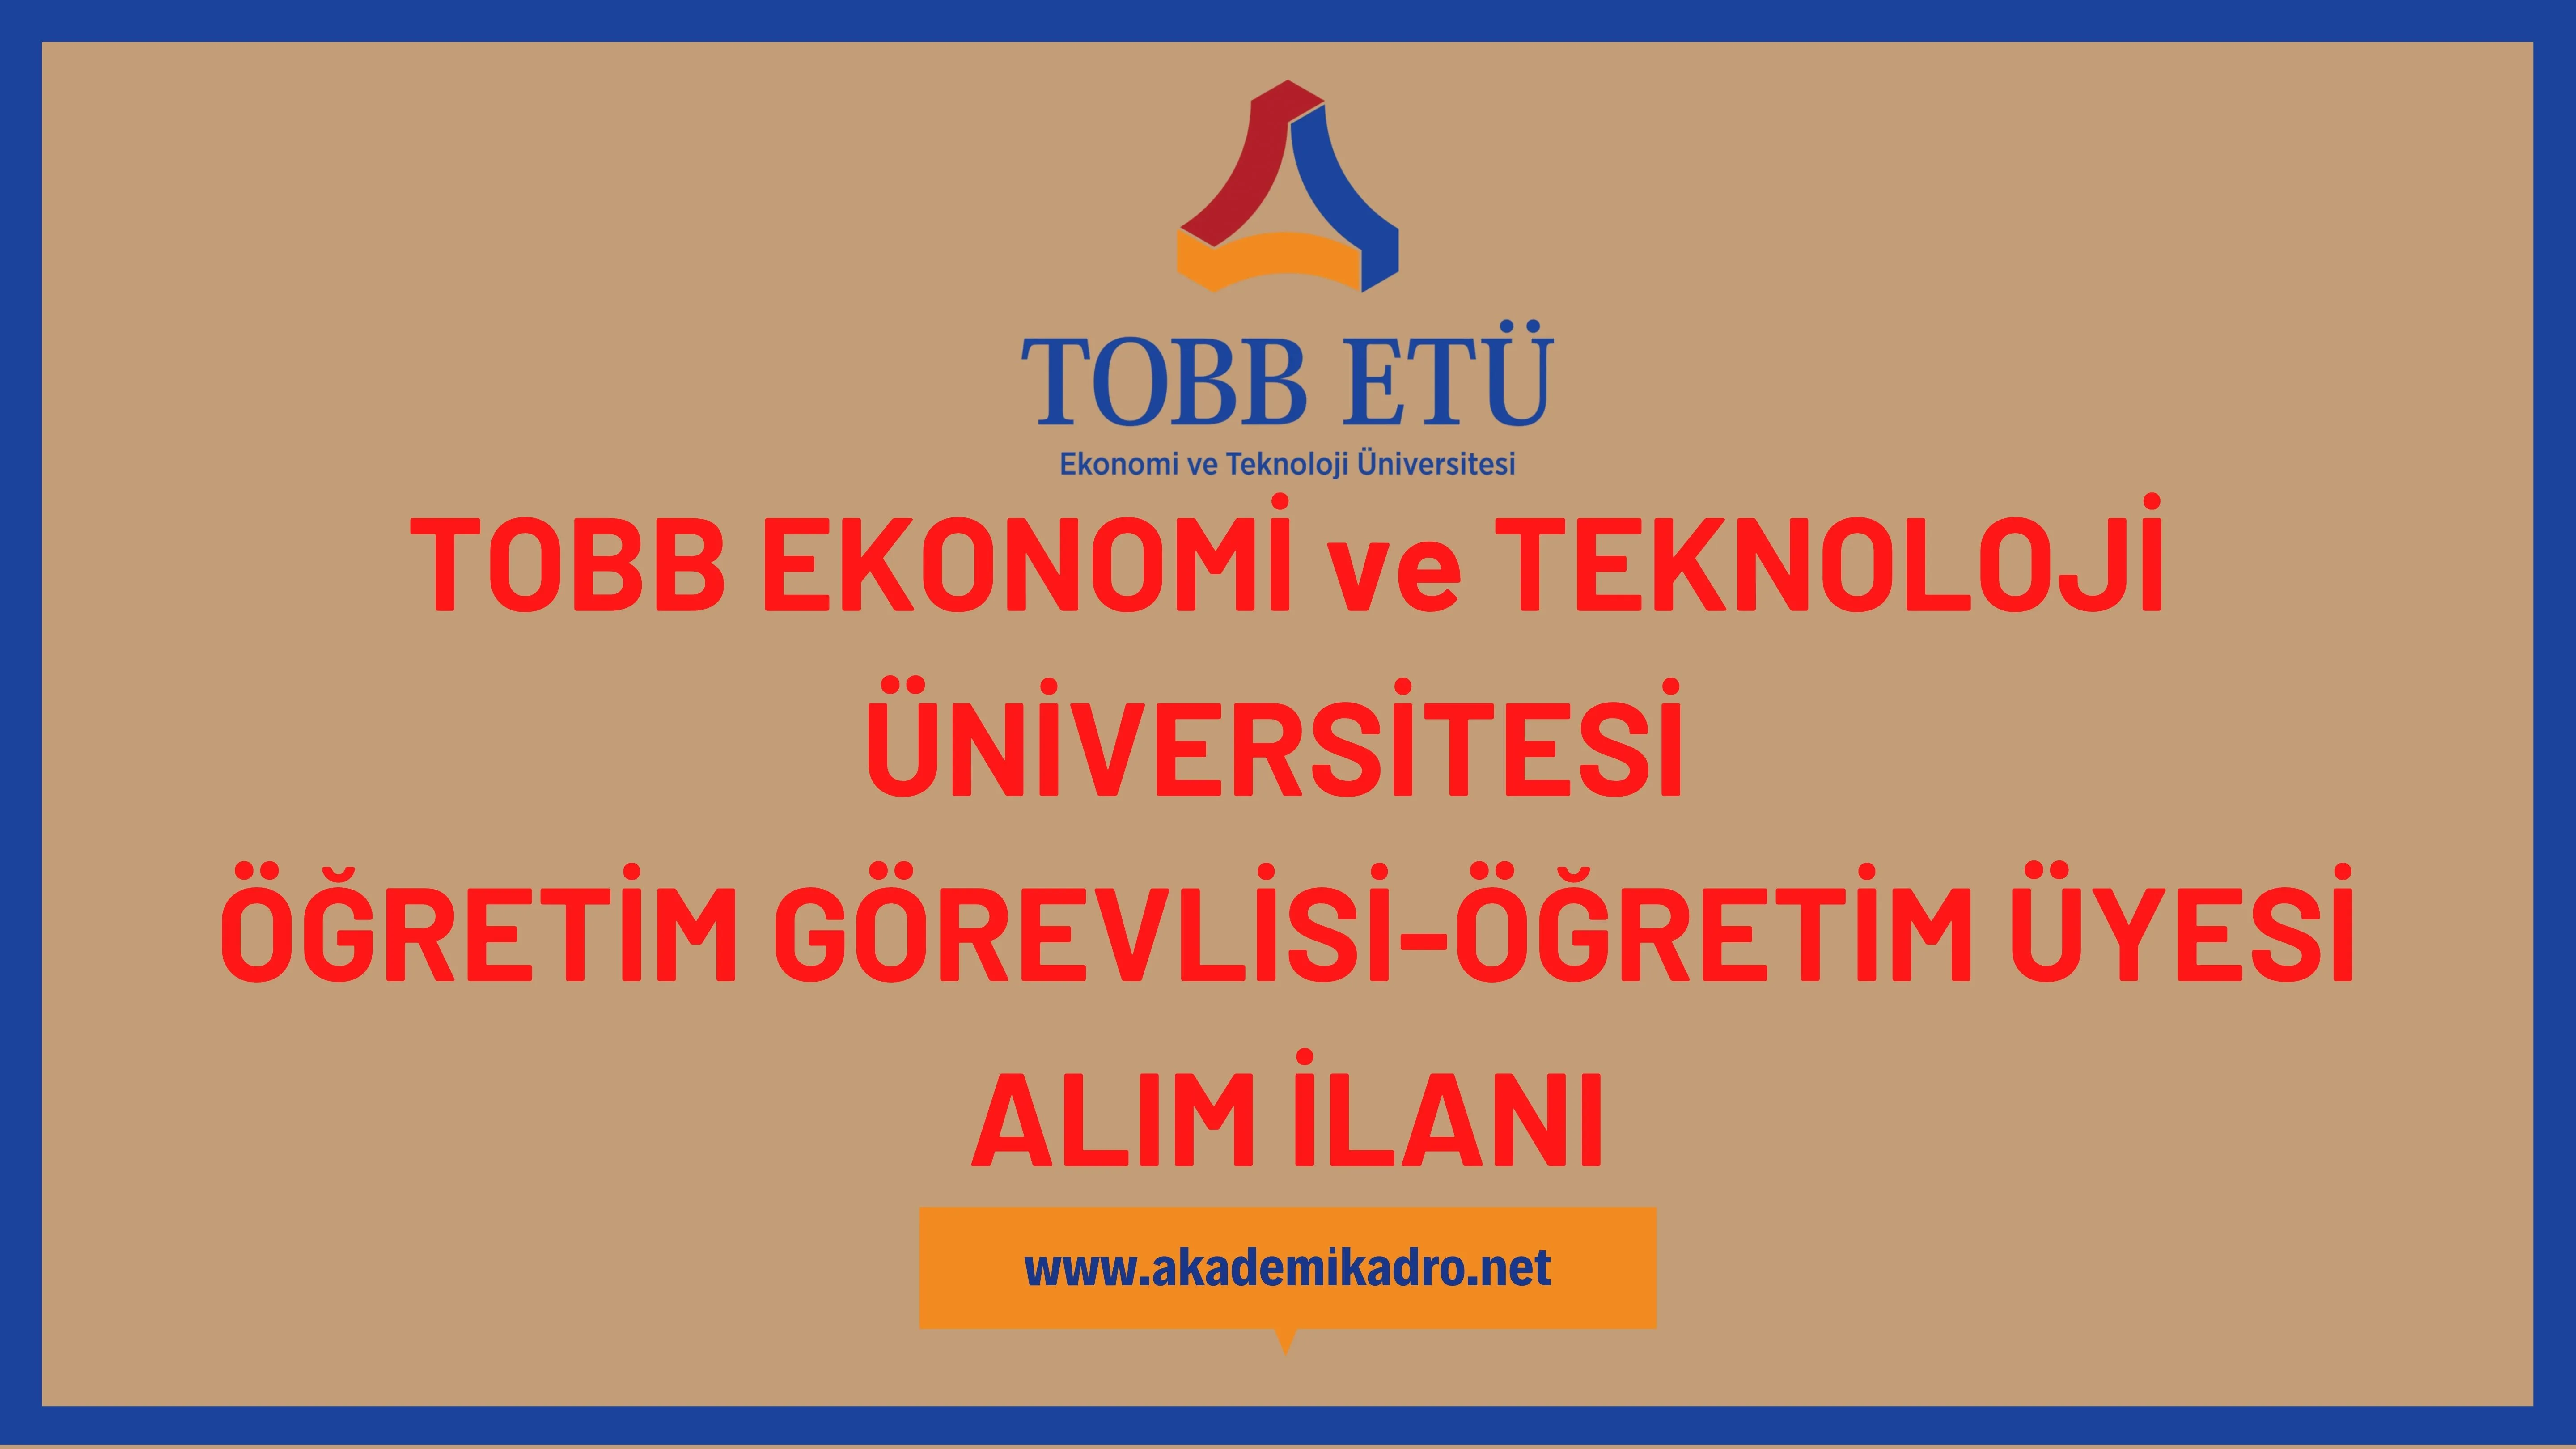 TOBB Ekonomi ve Teknoloji Üniversitesi 2 Öğretim görevlisi ve 2 Öğretim üyesi alacak. Son başvuru tarihi 05 Ocak 2023.